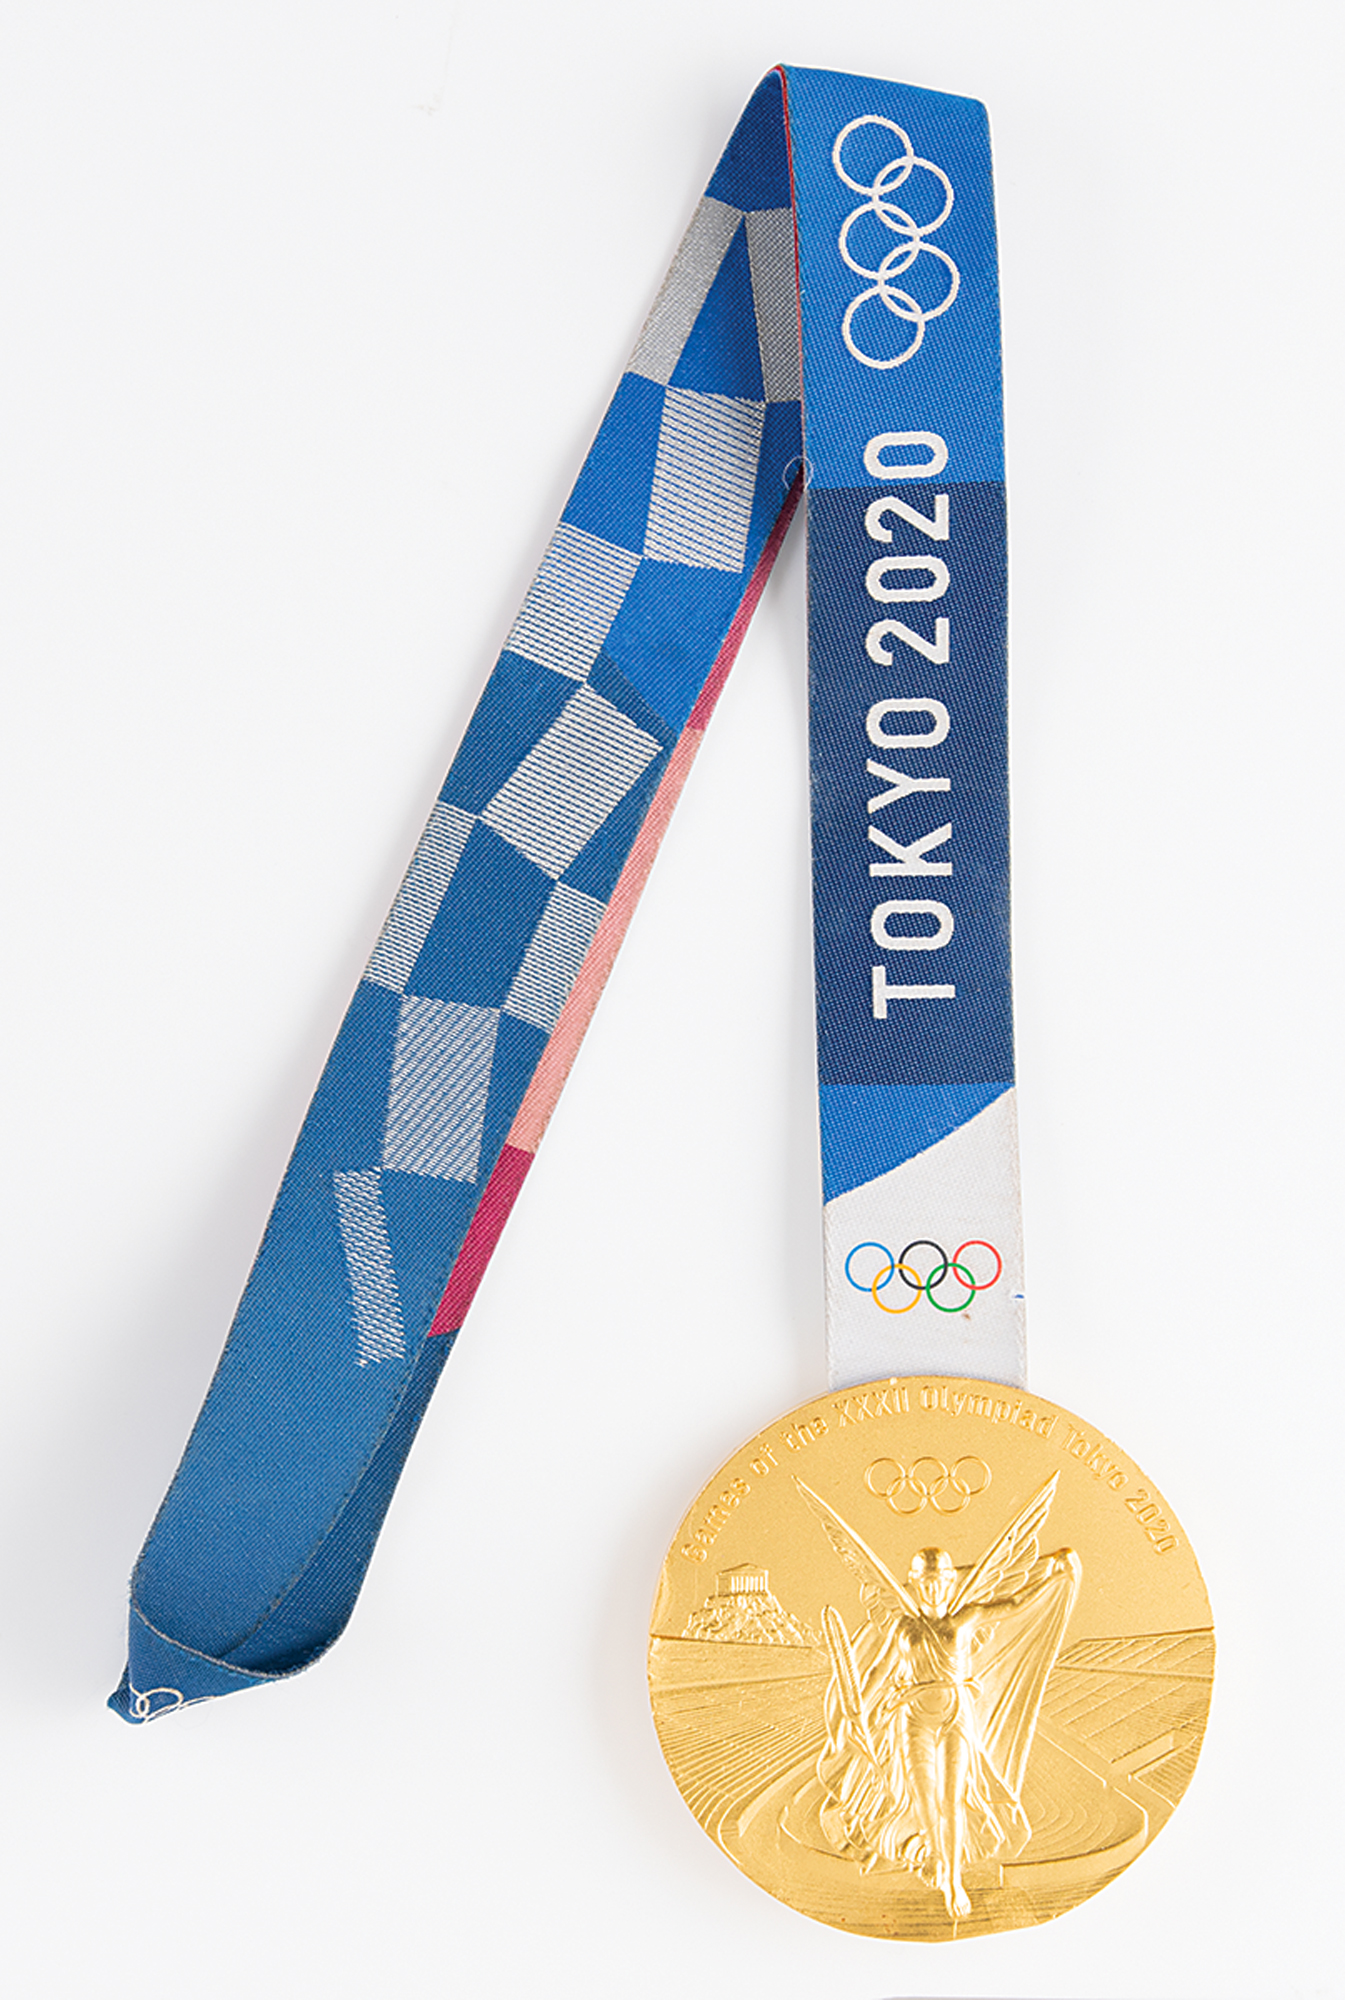 Lot #4074 Tokyo 2020 Summer Olympics Gold Winner's Medal